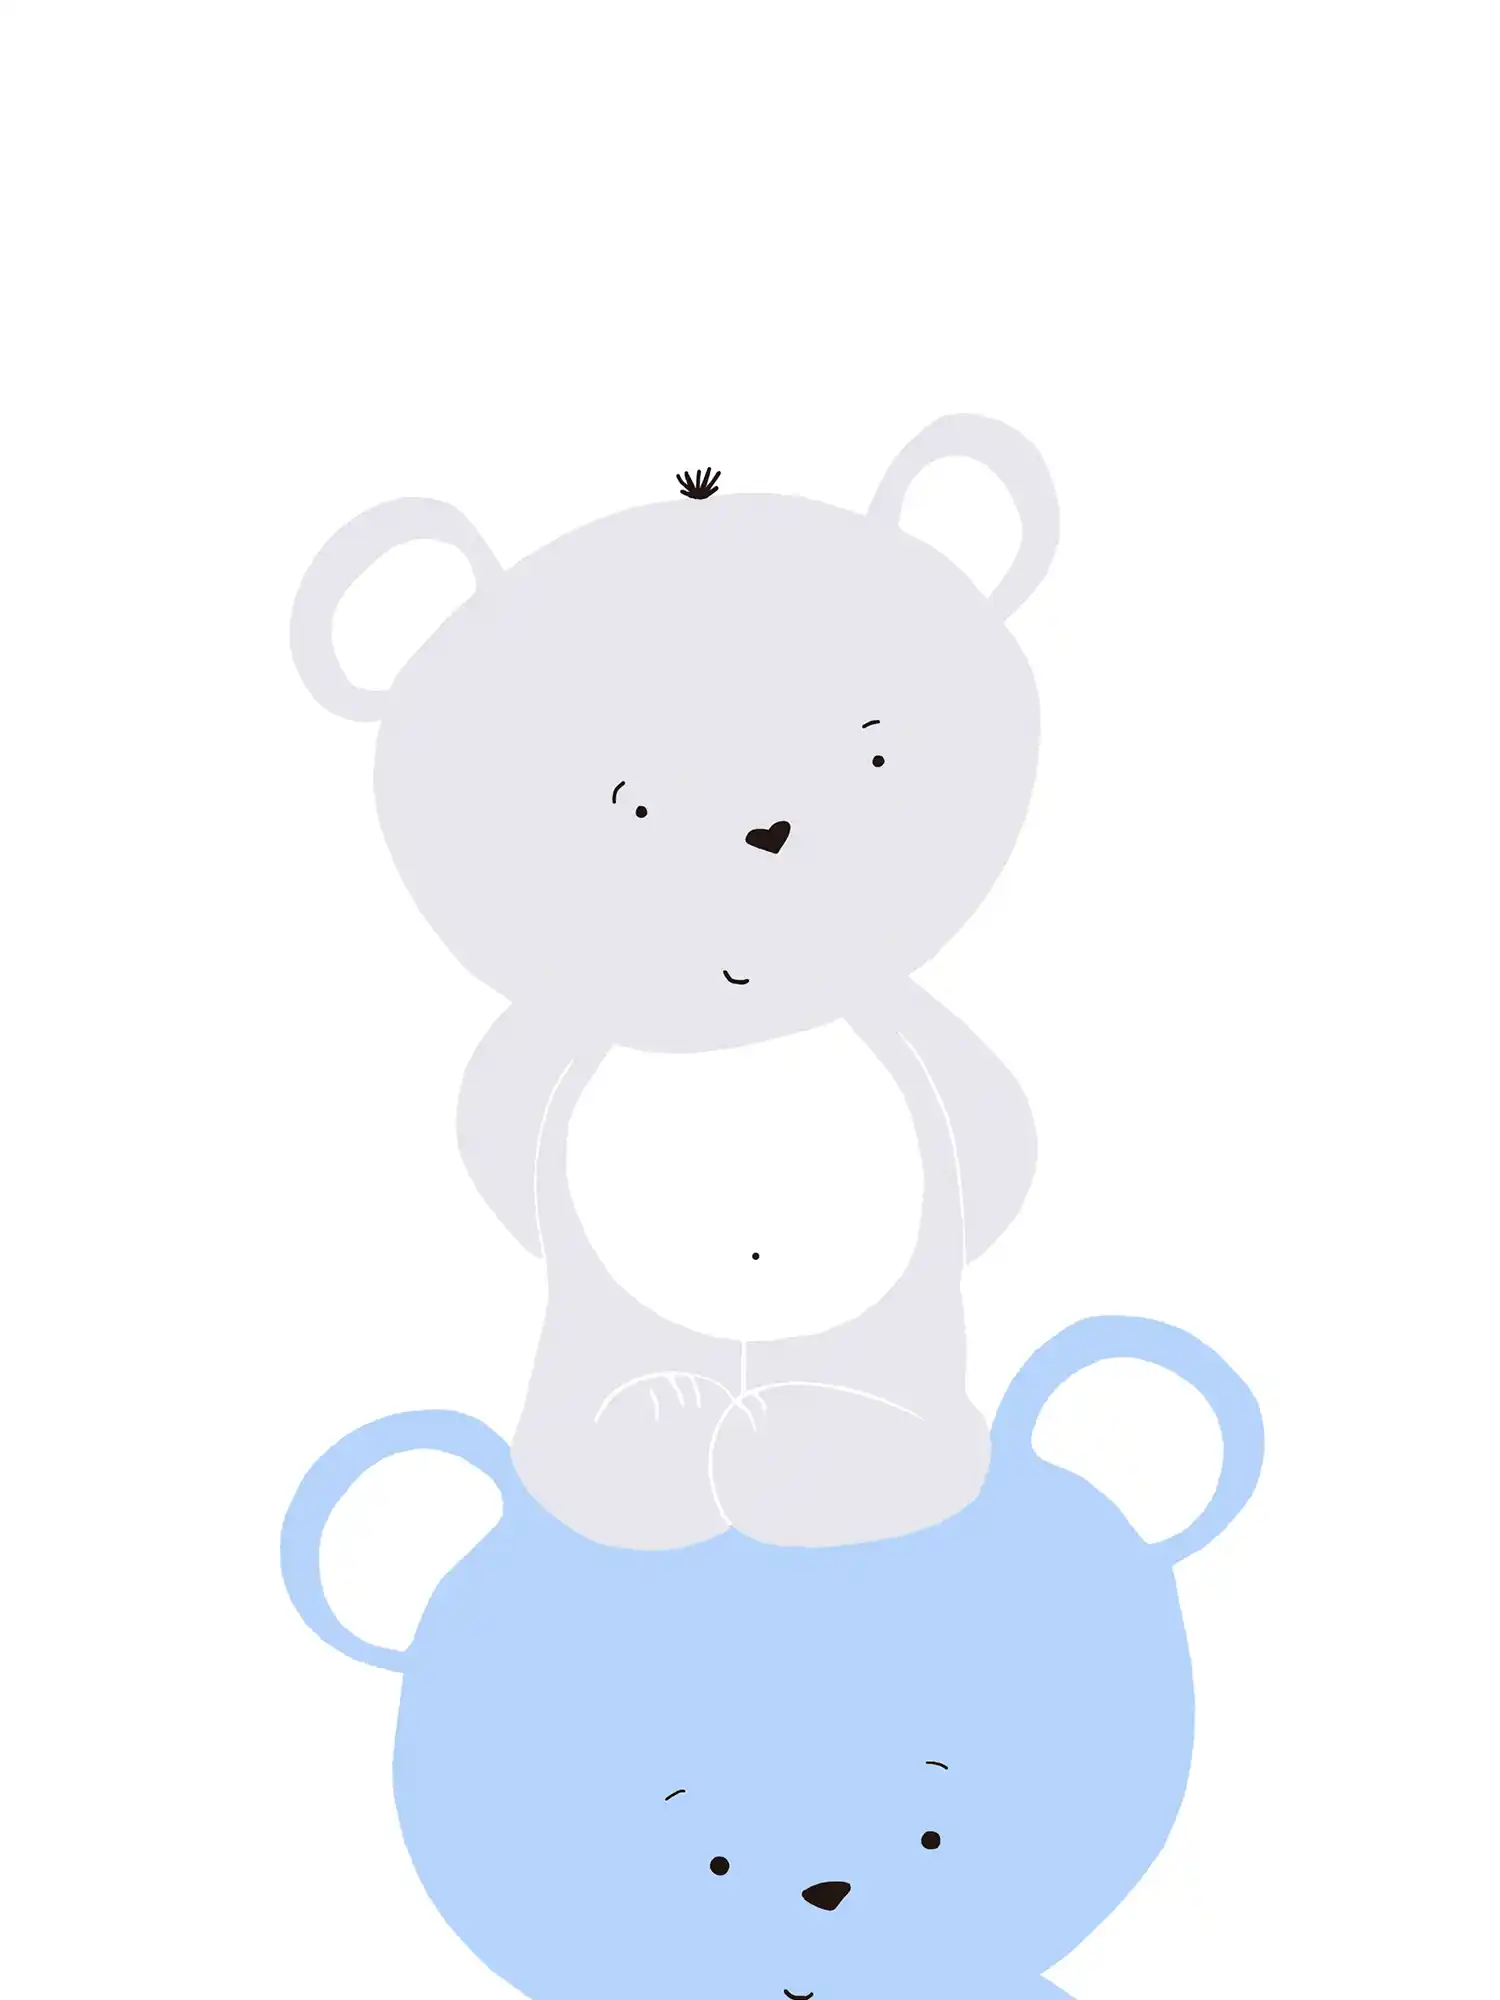 Carta da parati per camera dei ragazzi con motivo a orso - Blu, grigio, bianco
